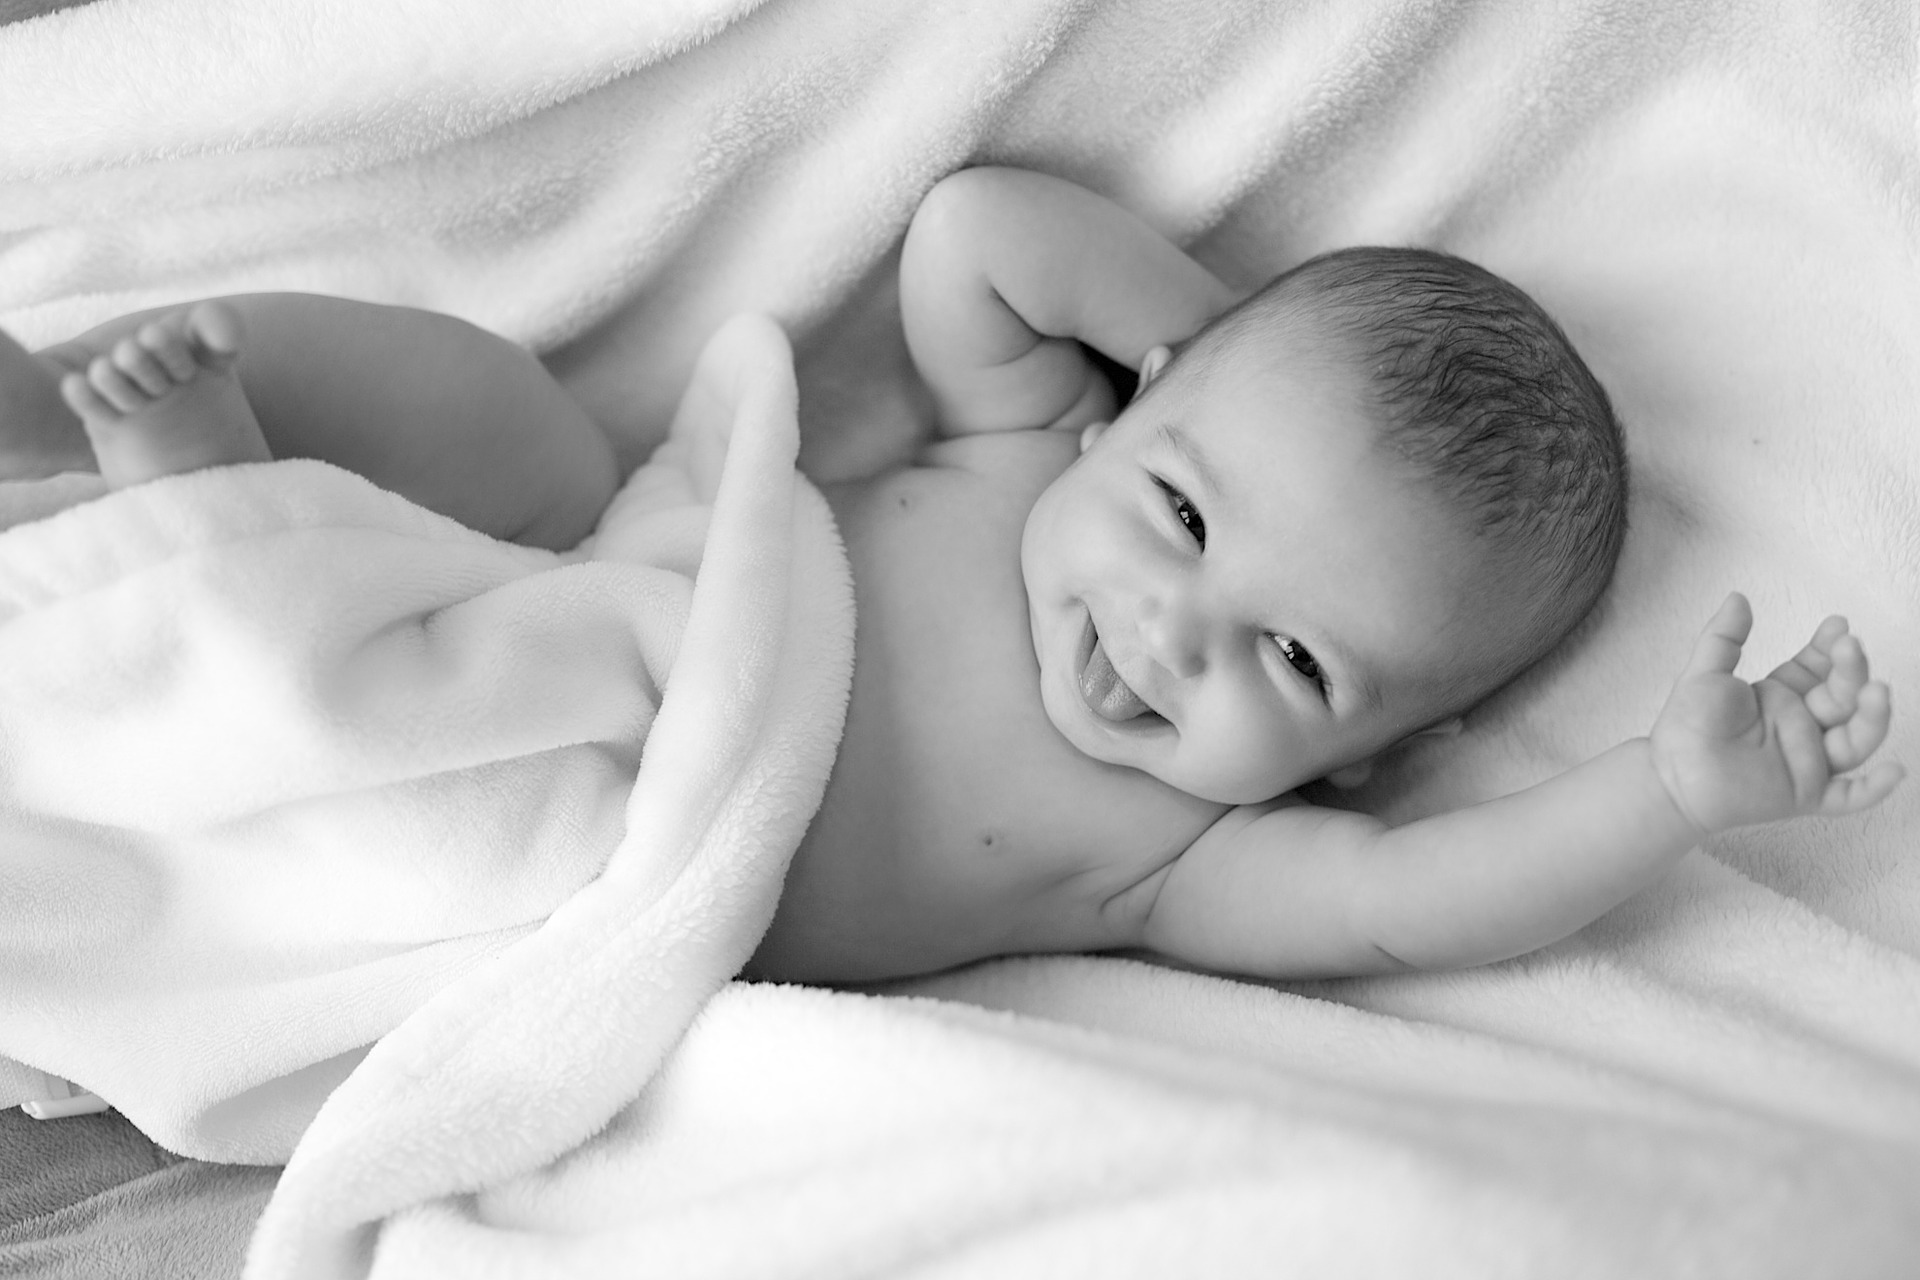 איך מעודדים התפתחות תינוקות תקינה?